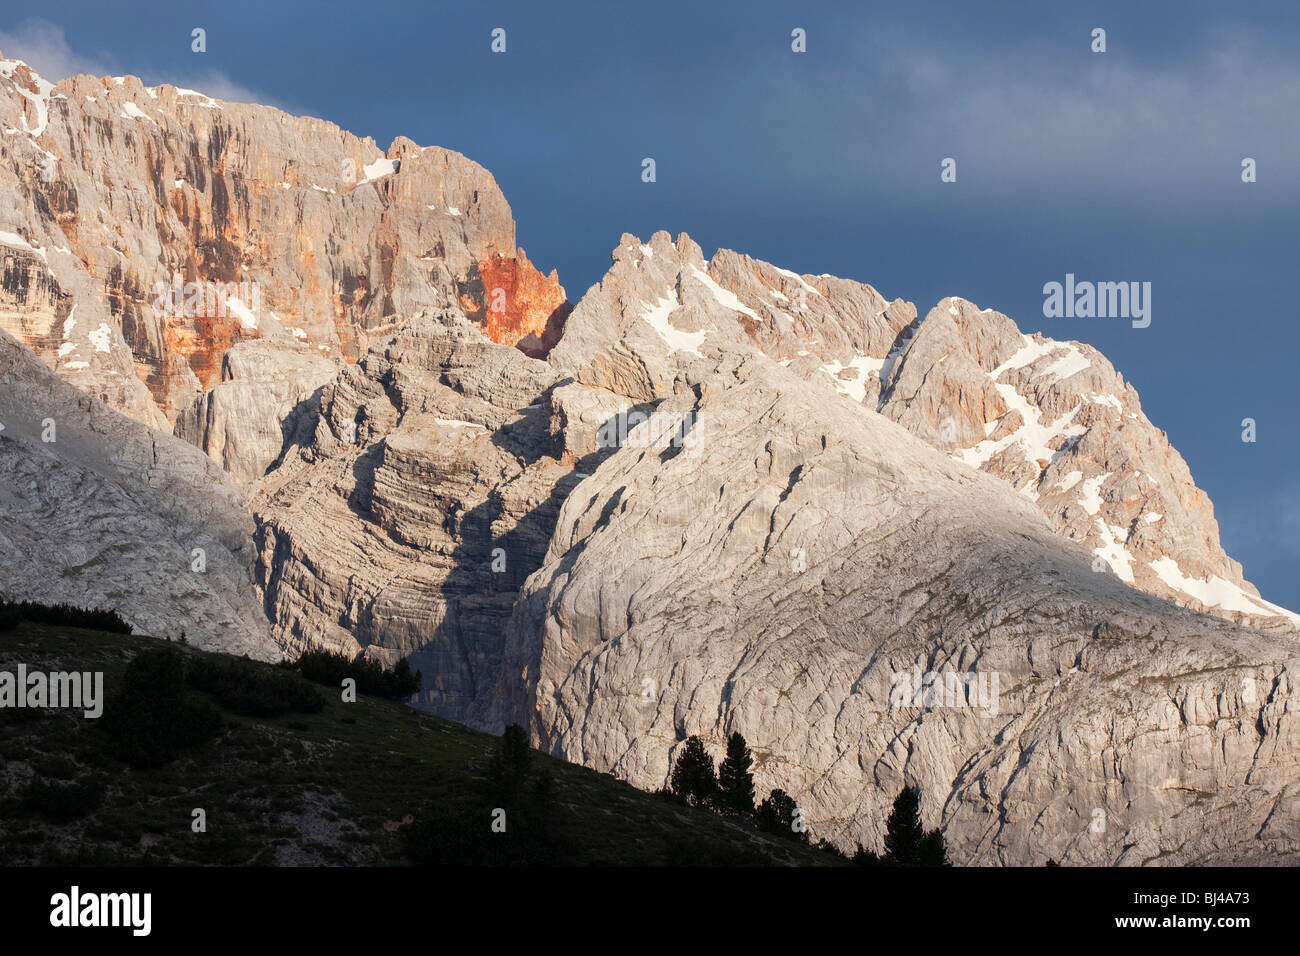 La montagne de Croda Rossa dans la matinée, le Tyrol du Sud, Italie, Europe Banque D'Images